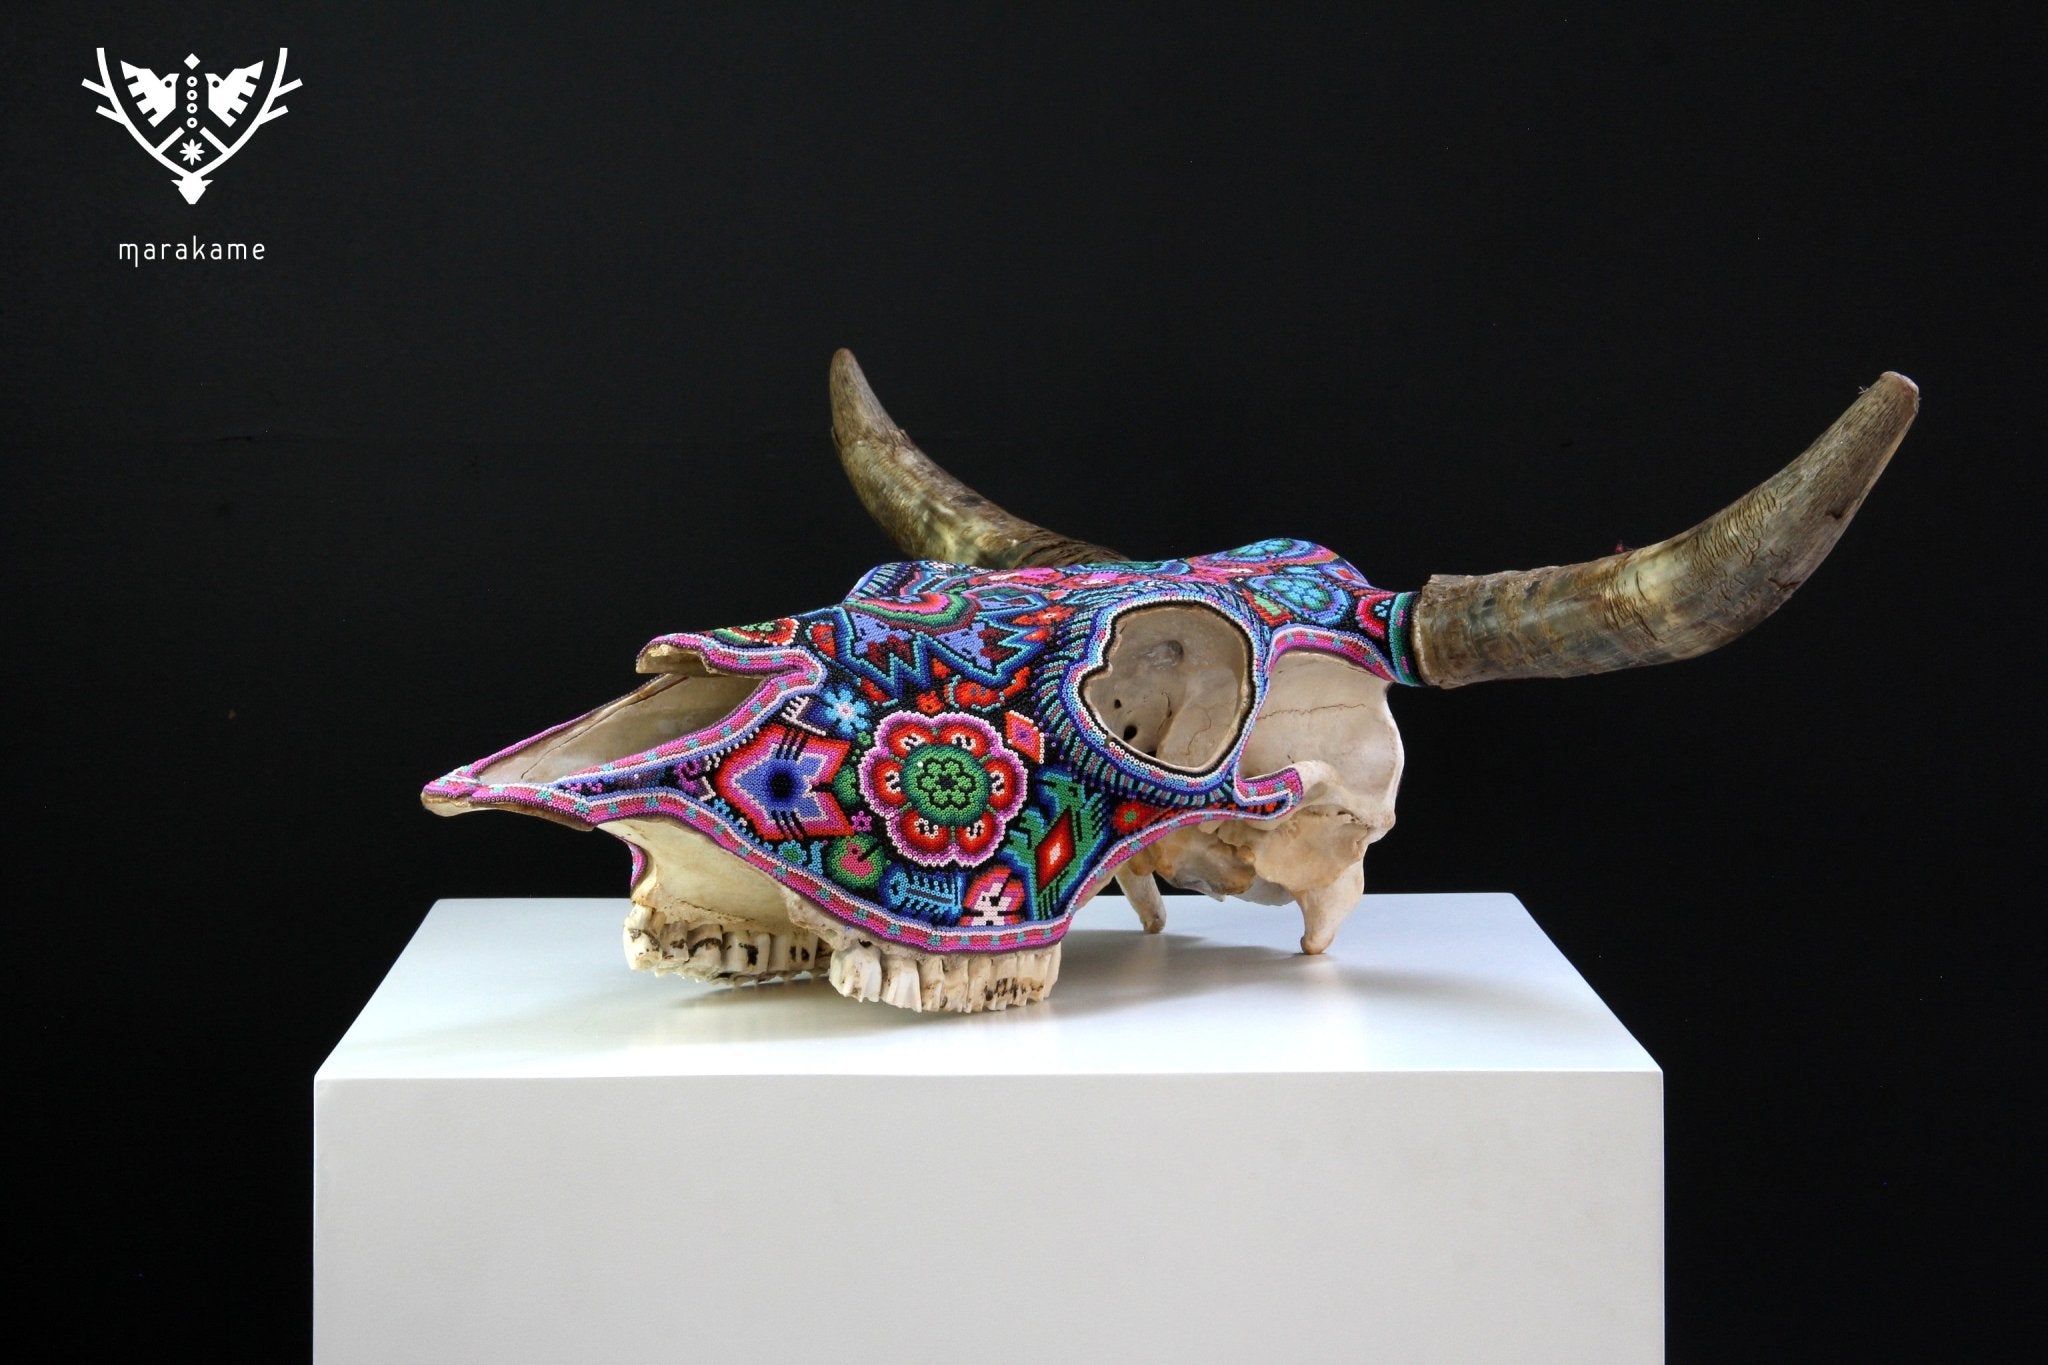 牛の頭蓋骨のウイチョル族のアート - マラカテス - ウイチョル族のアート - マラカメ